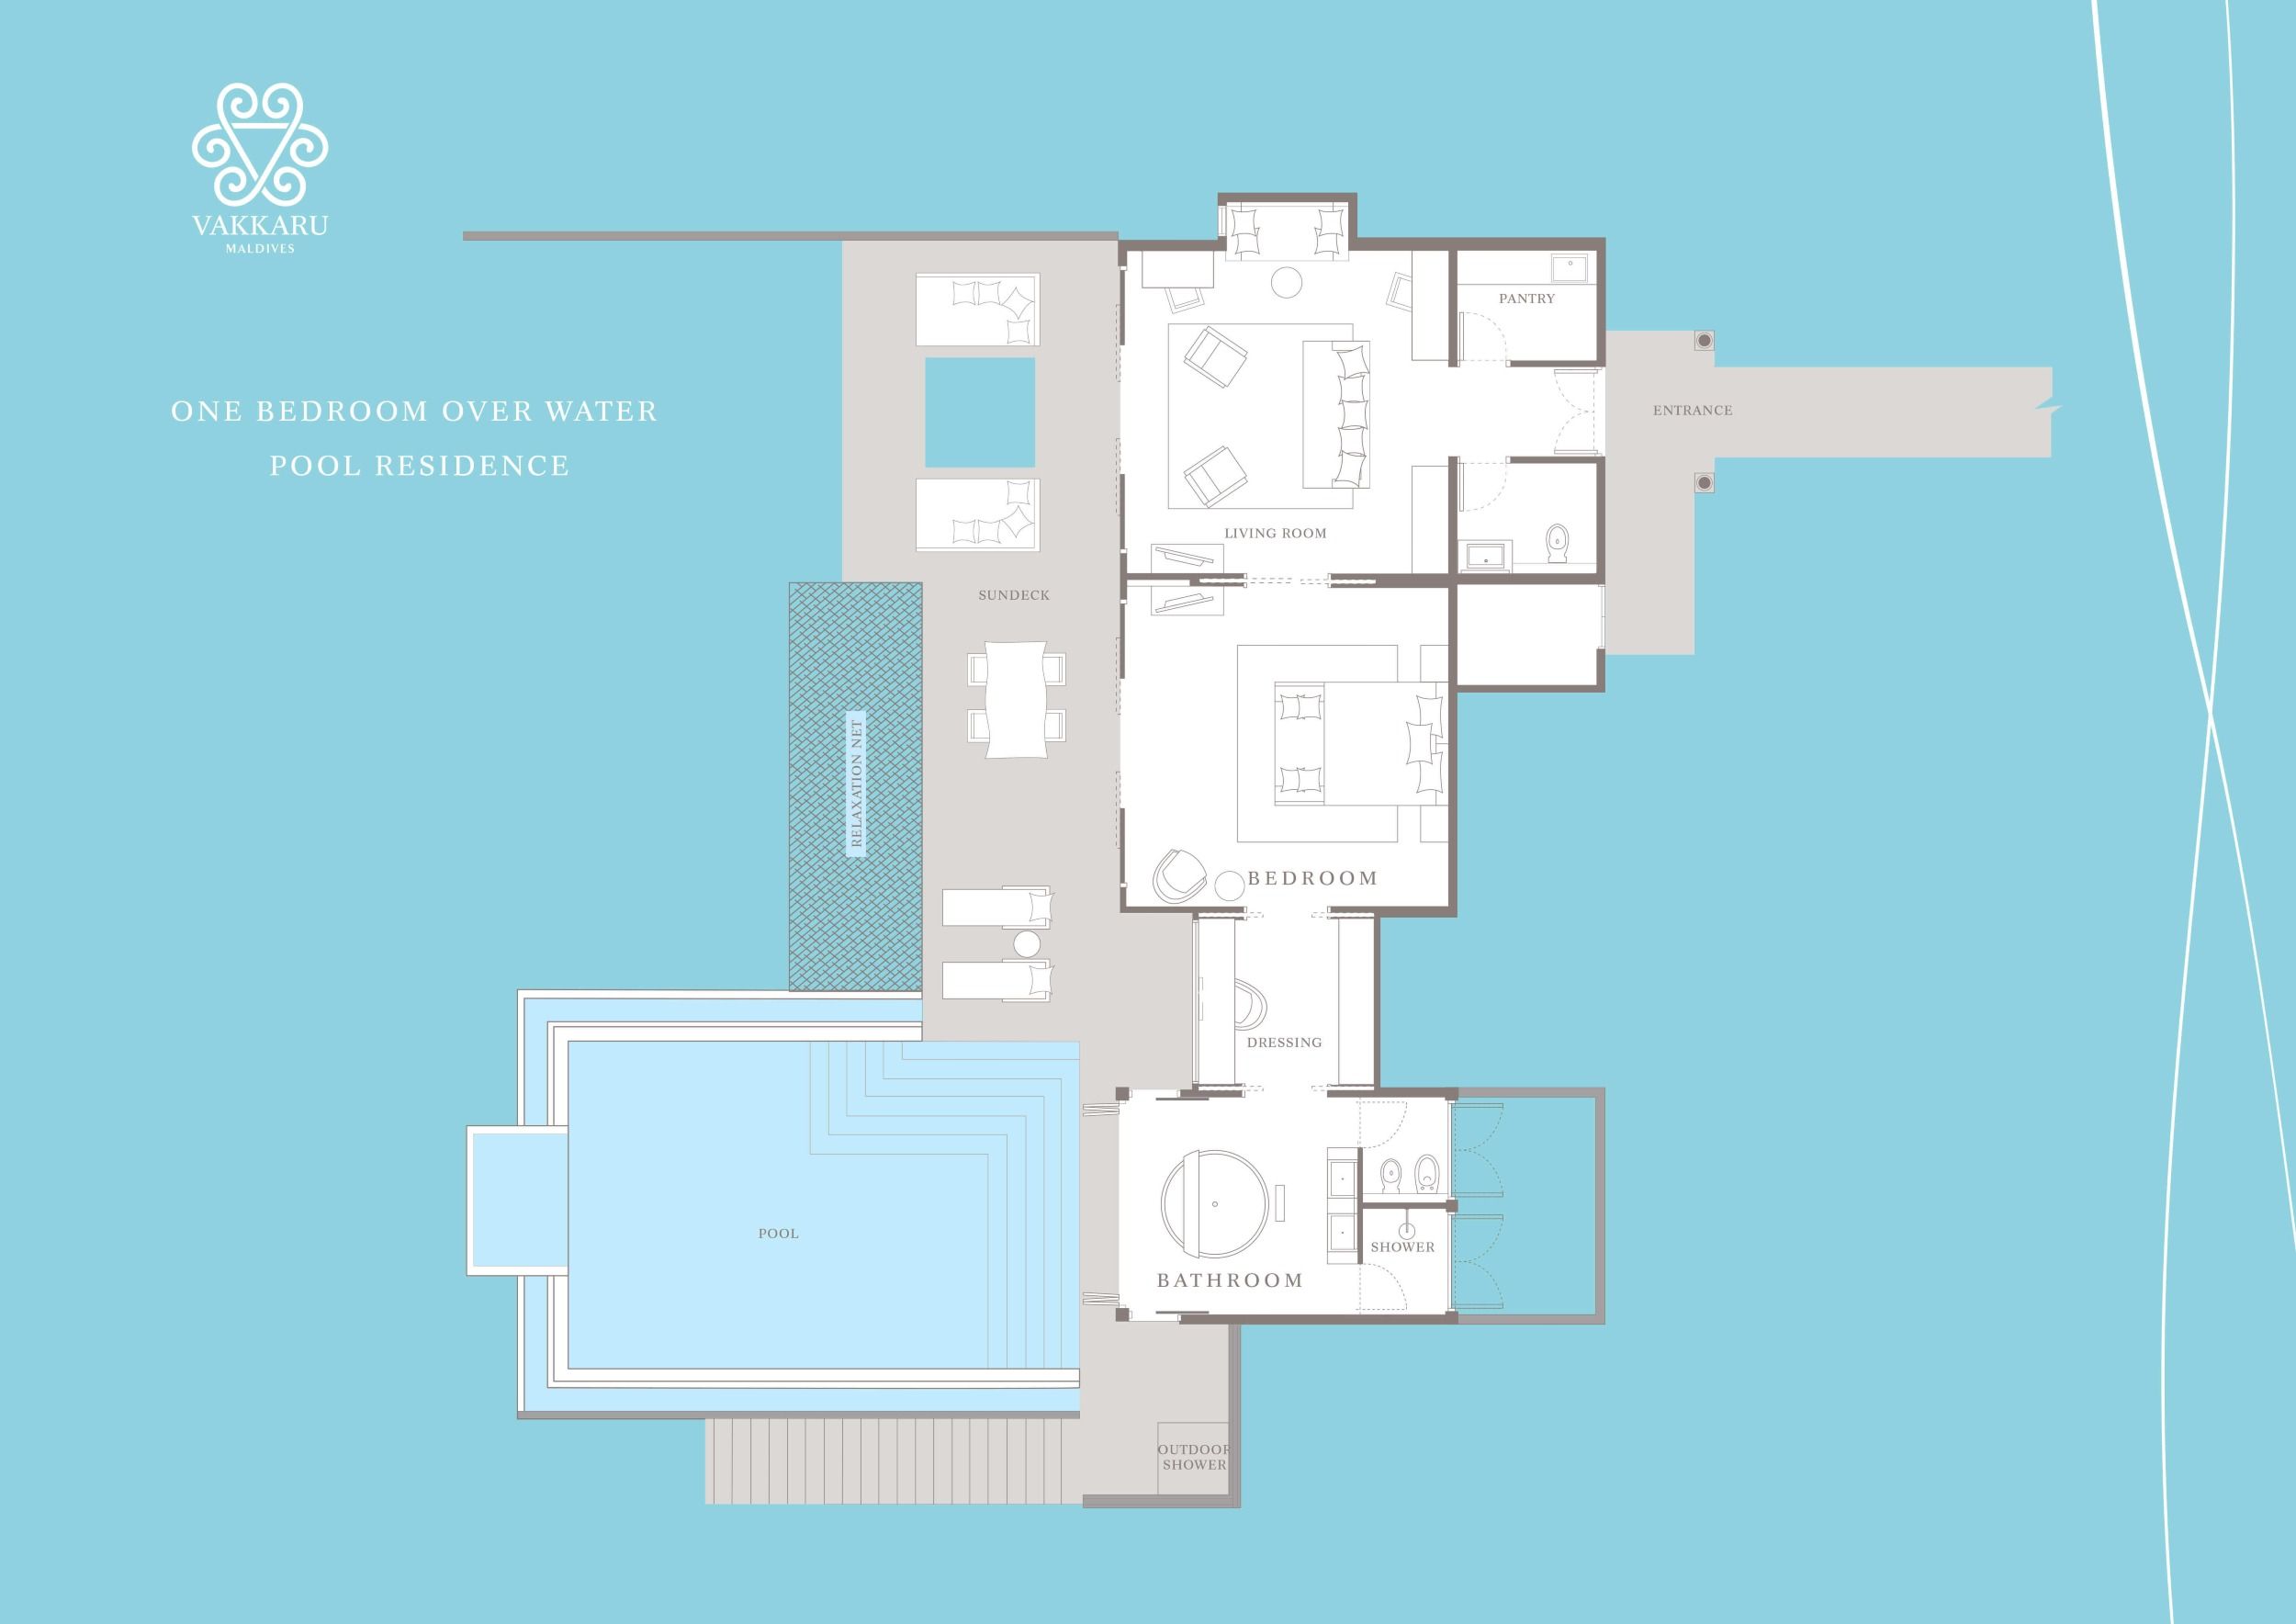 One Bedroom Over Water Pool Residence Floor Plan Vakkaru Maldives 